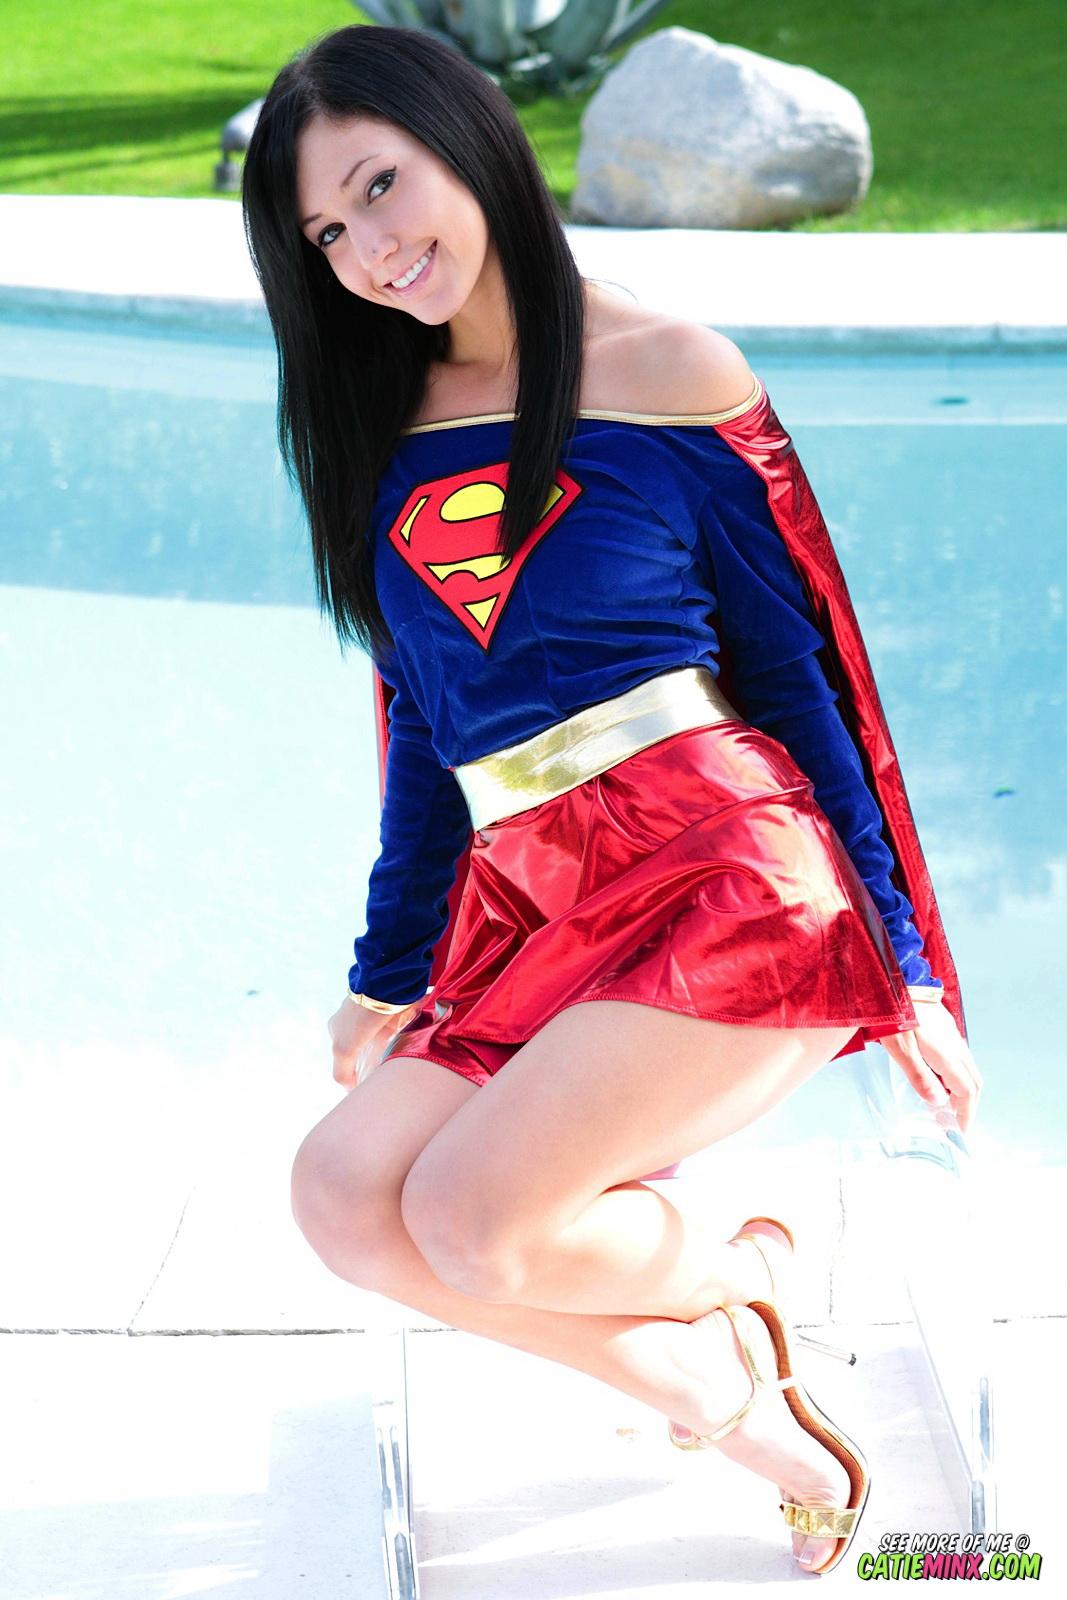 La nerd dai modi gentili Catie Minx rivela i suoi poteri super cattivi come supergirl
 #53722641